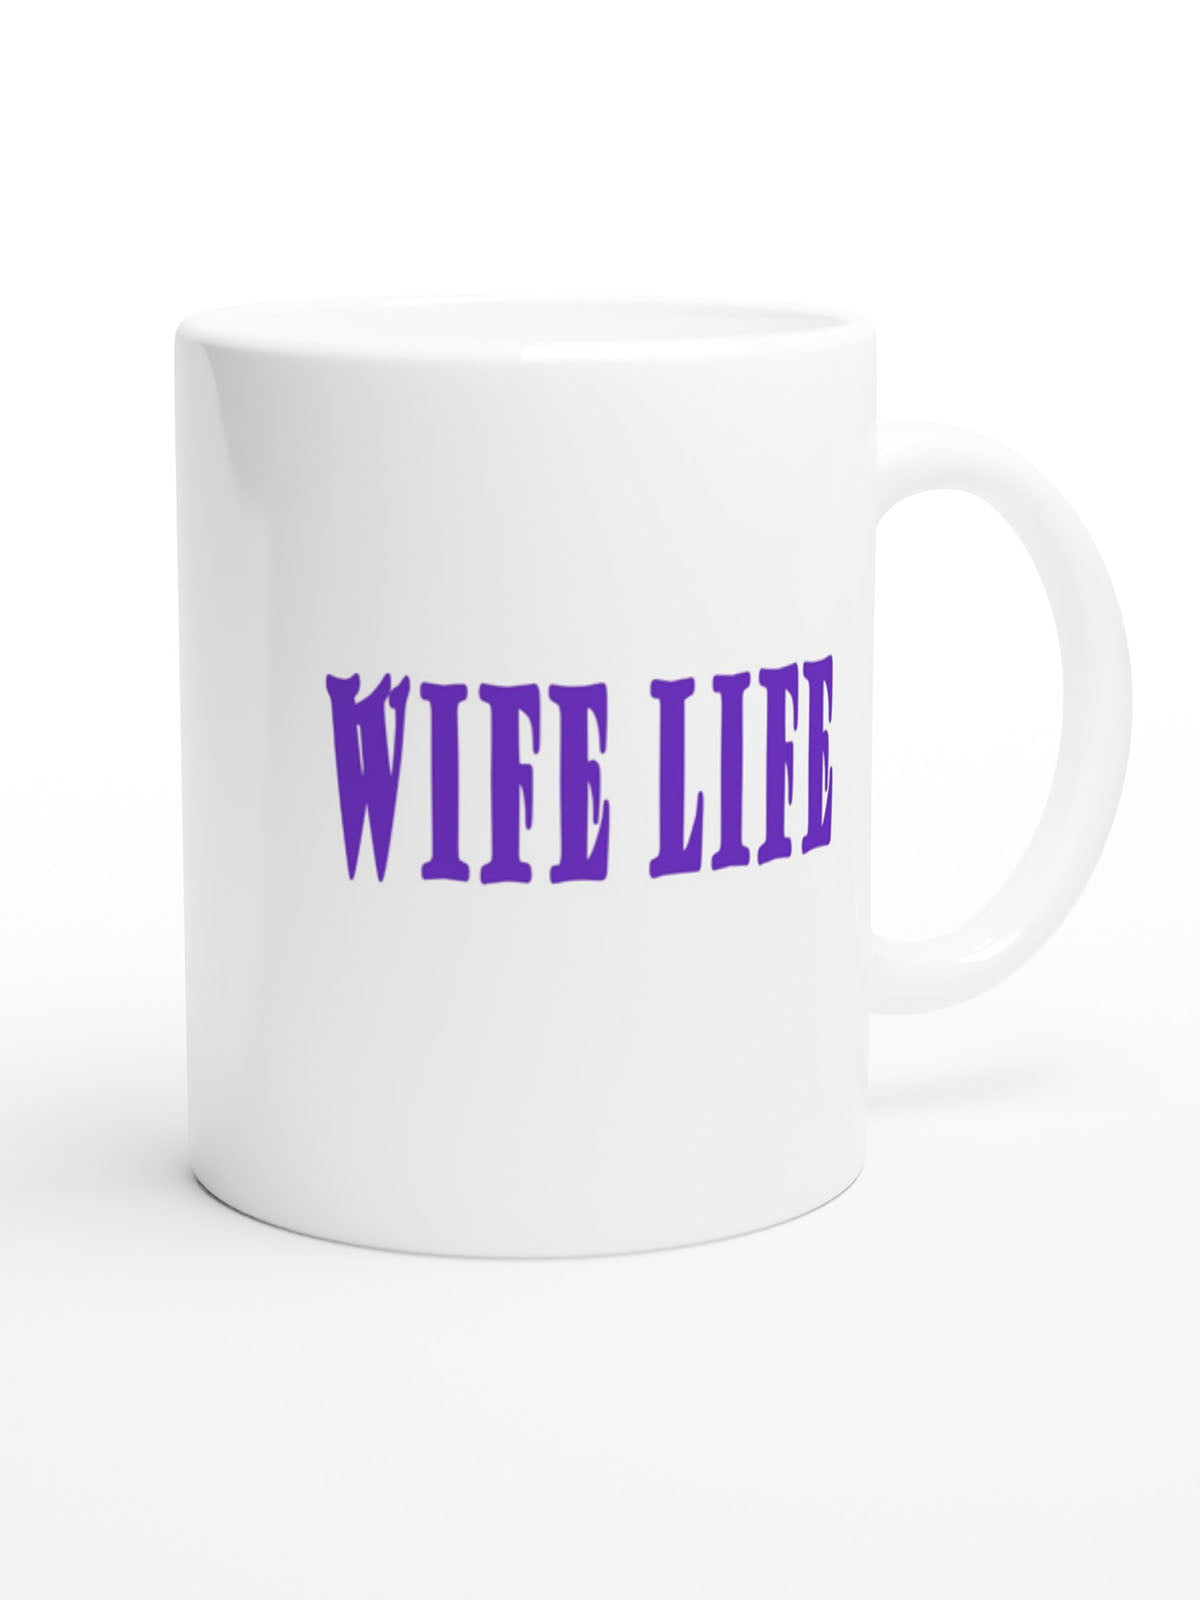 Wife Life - White 11oz Ceramic Mug